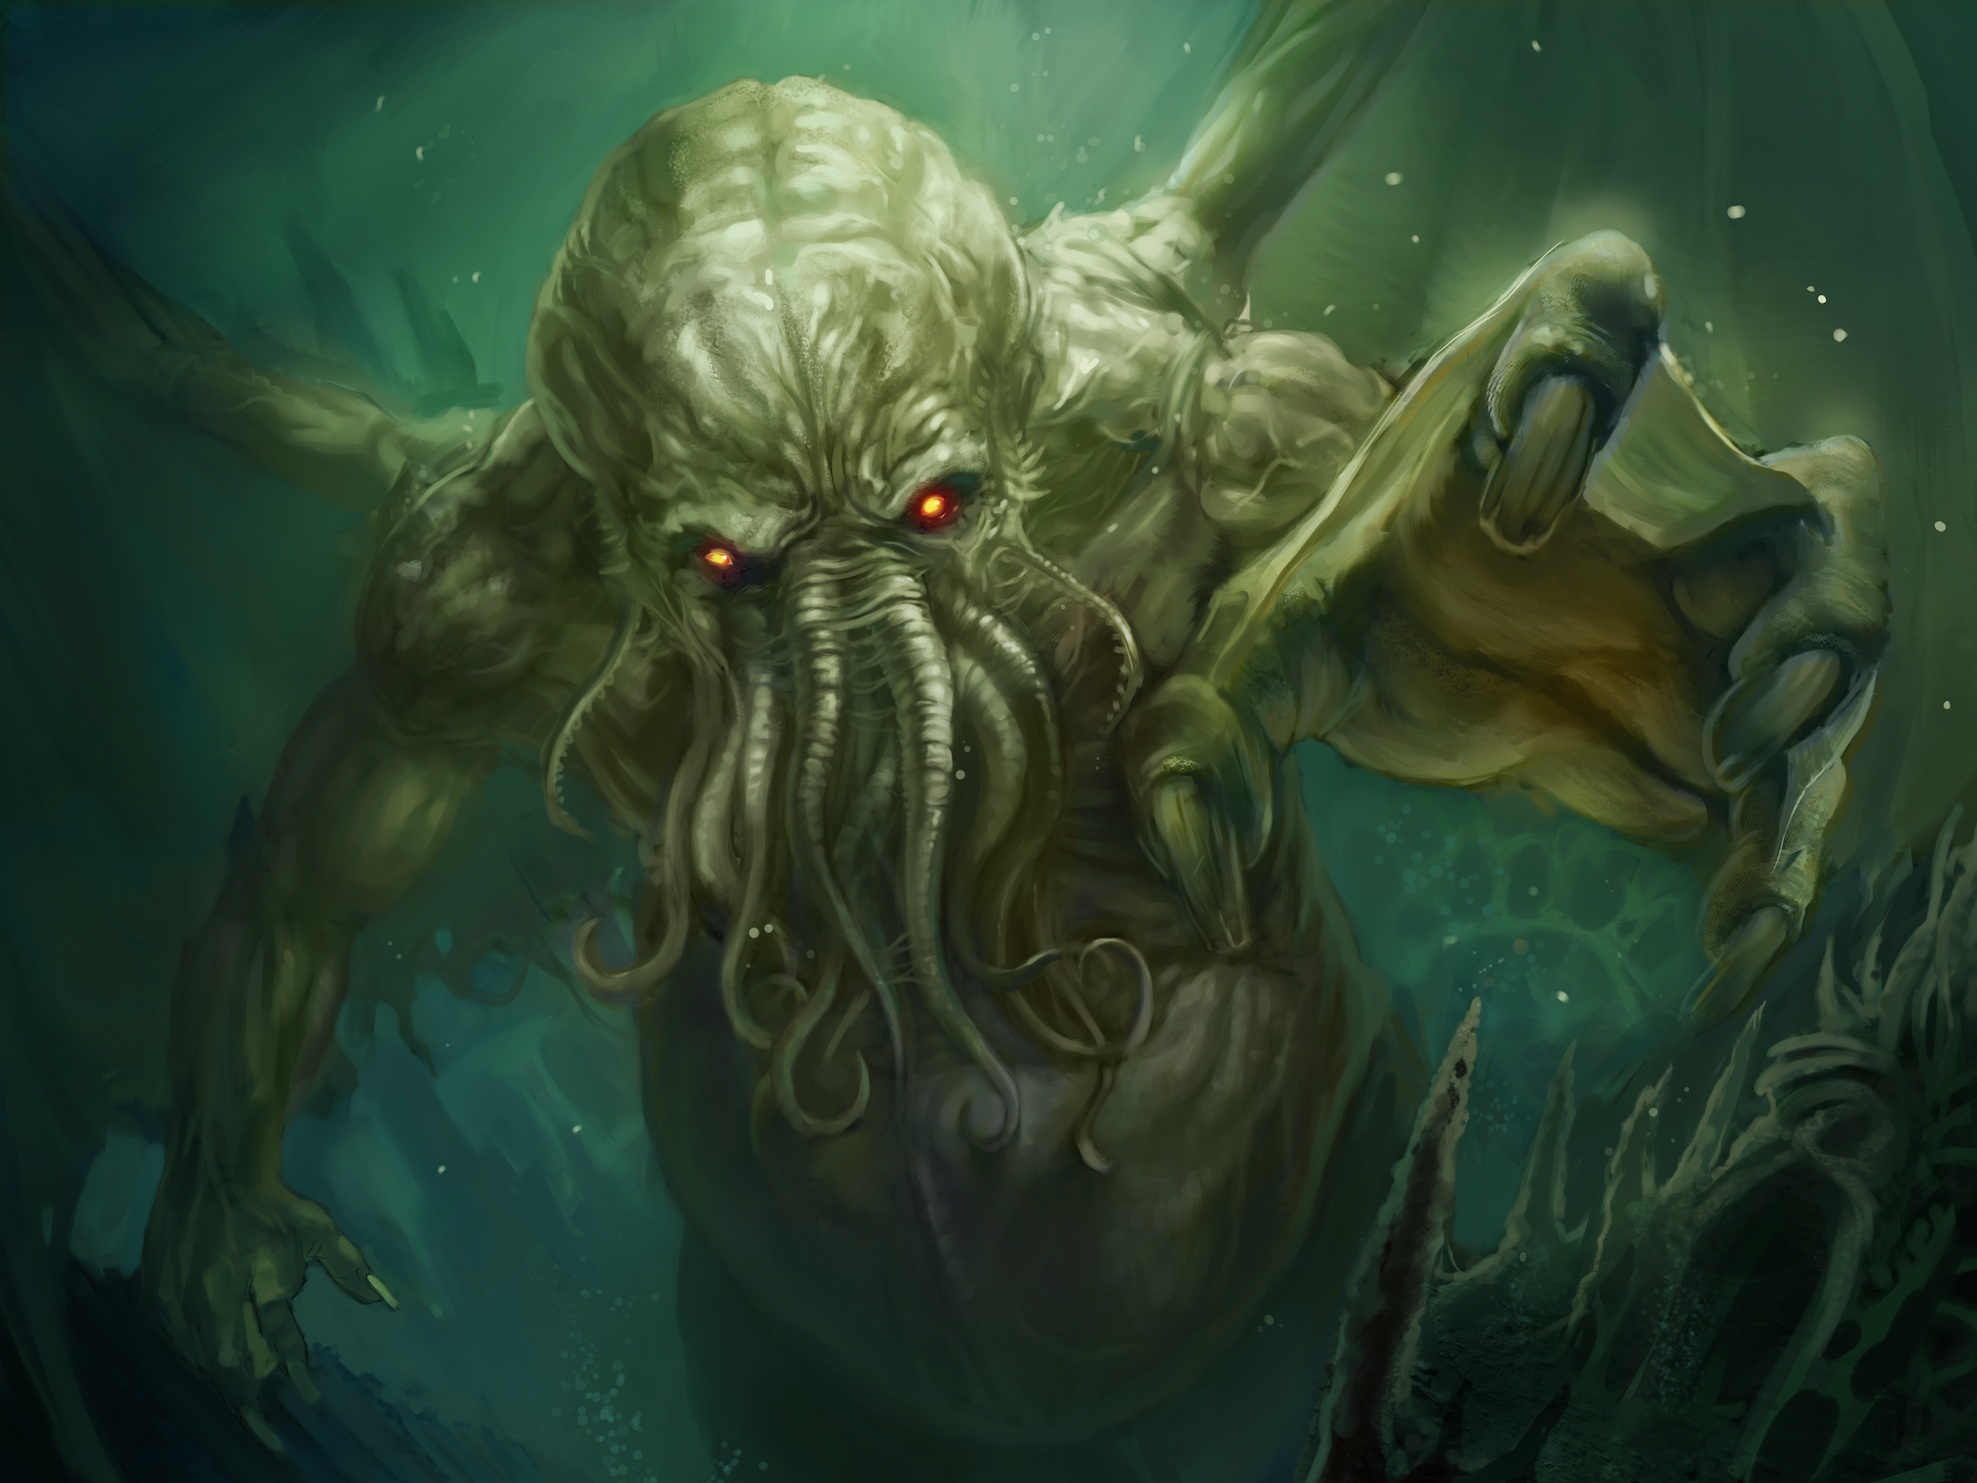 ESPECIAL: Los 10 monstruos más terroríficos dentro del universo de Lovecraft